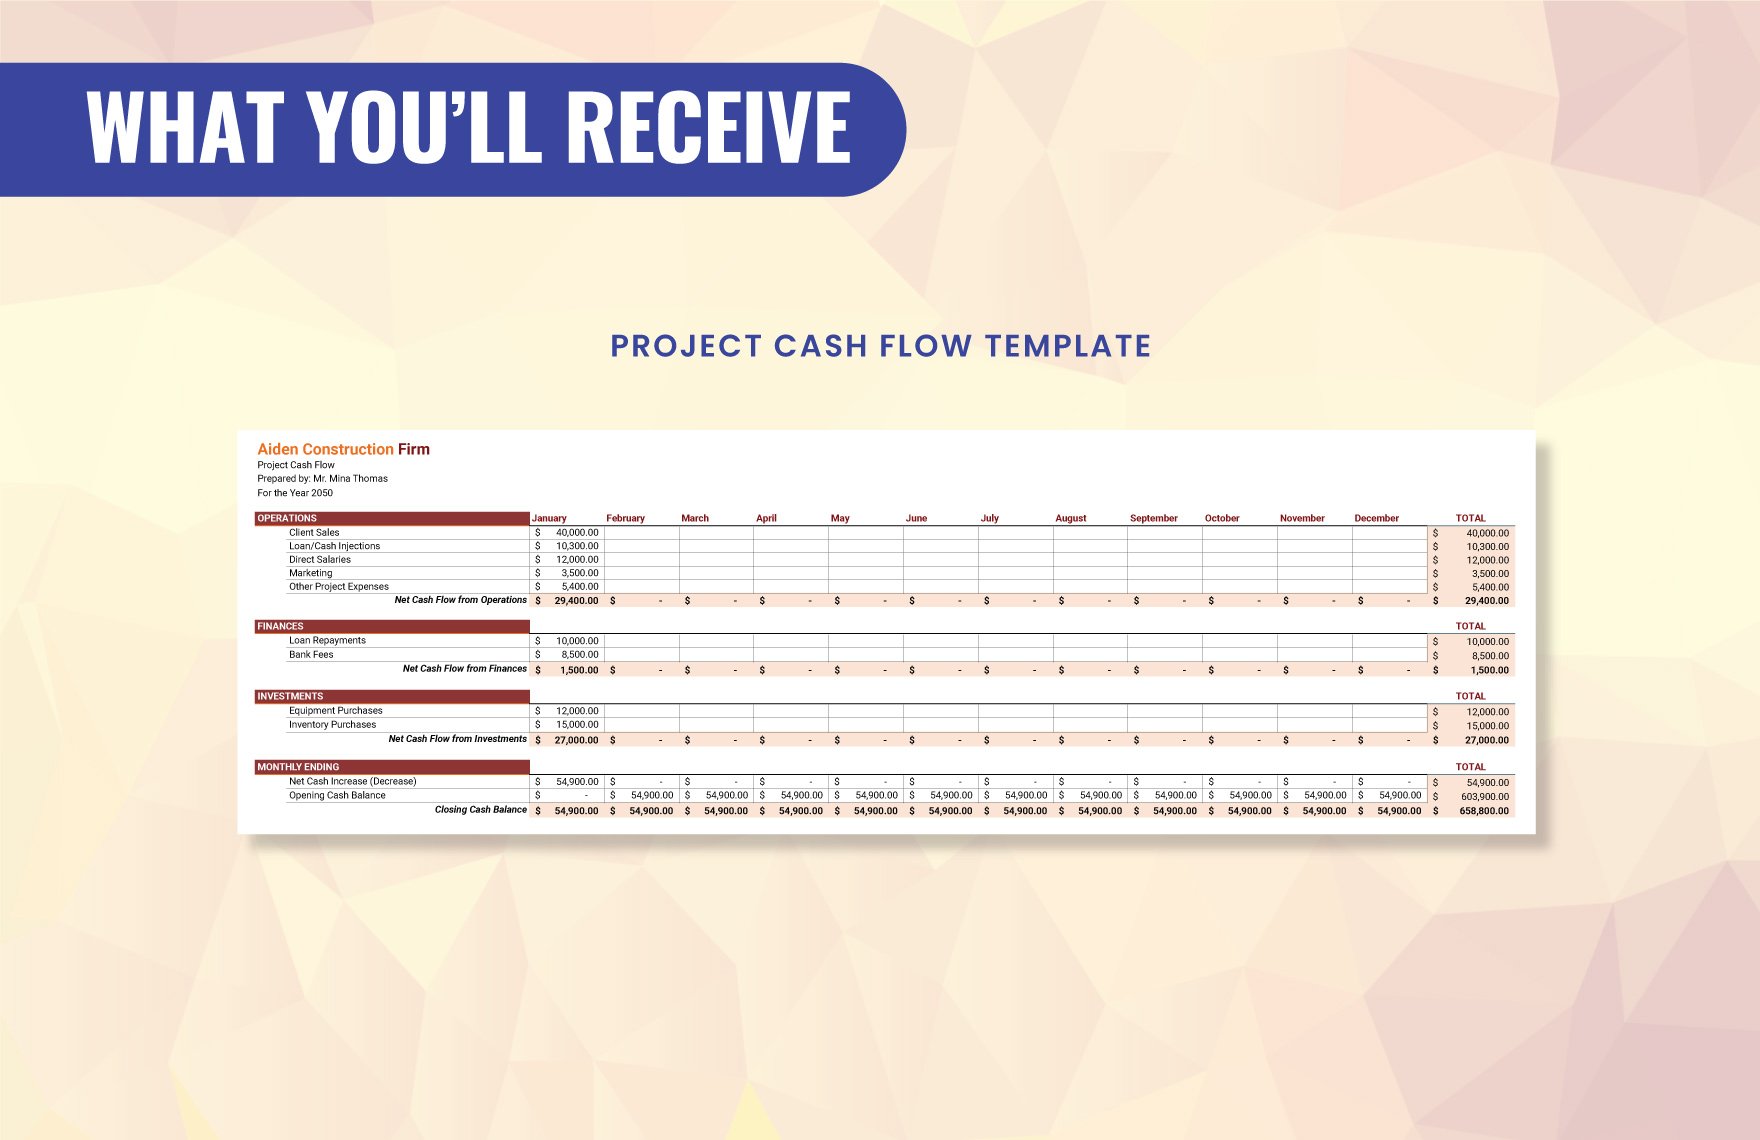 Project Cash Flow Template